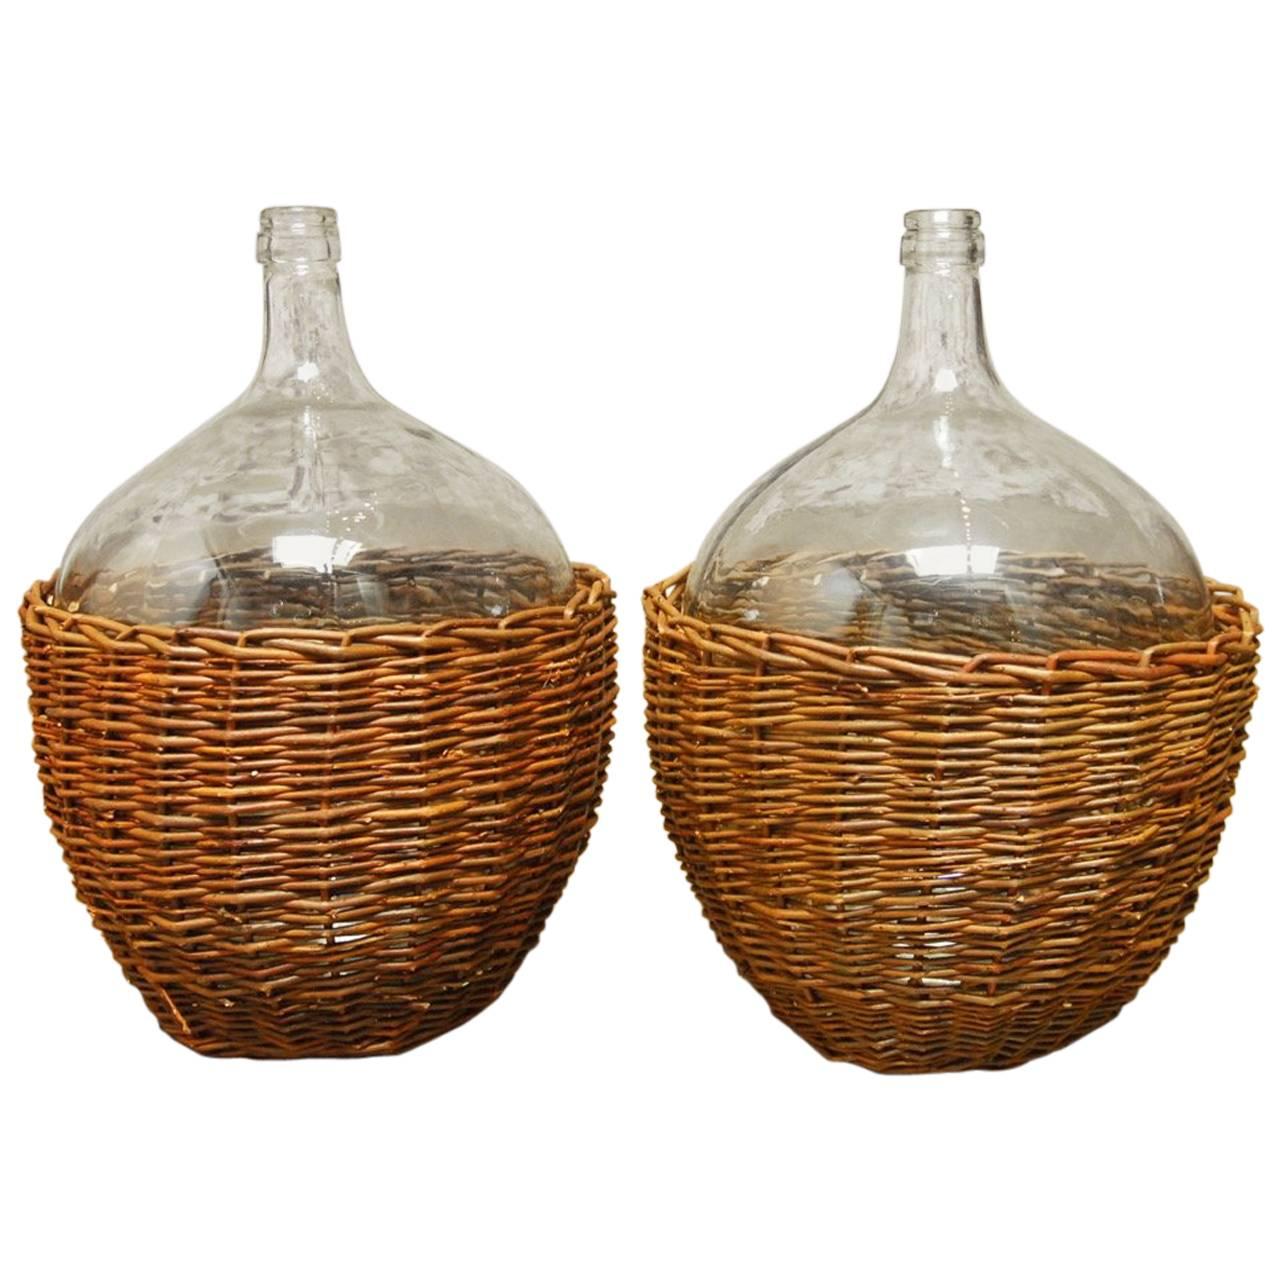 Pair of Woven Willow Demijohn Glass Wine Bottles 